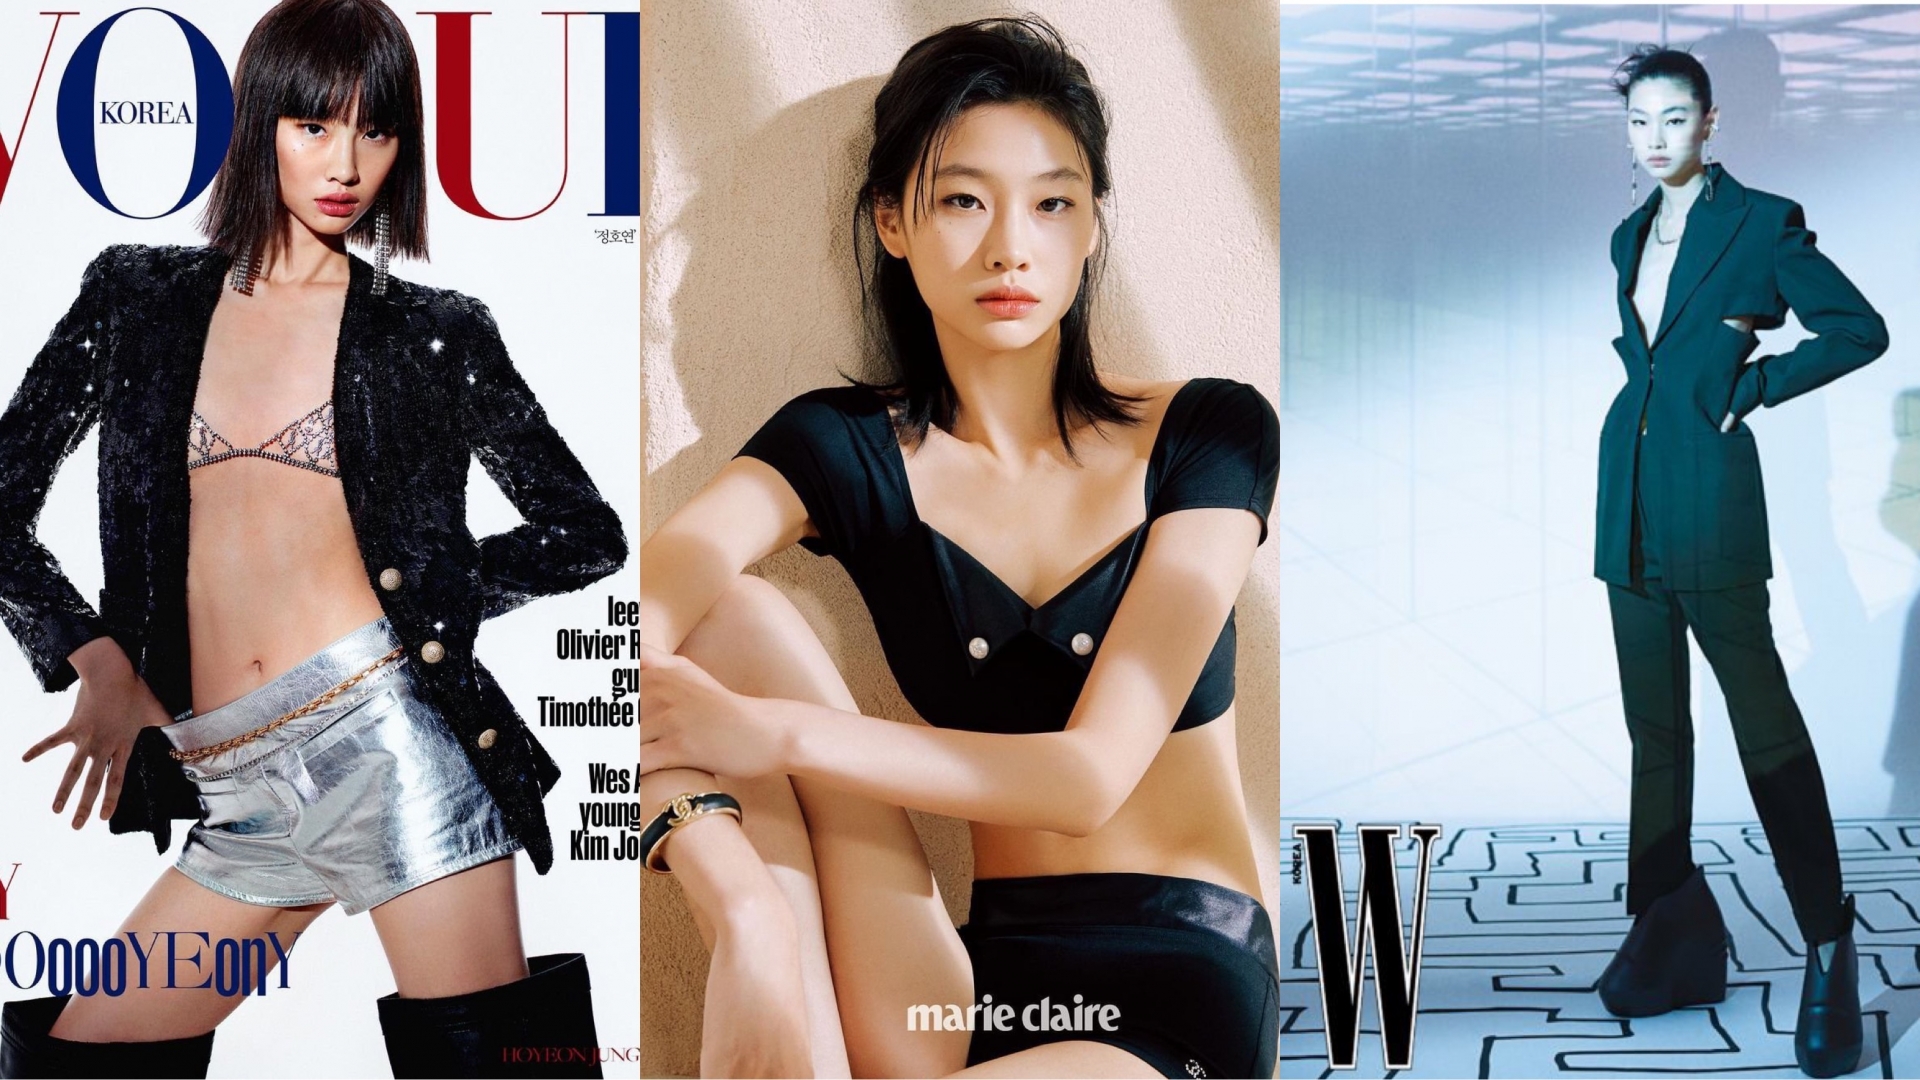 Jung Ho Yeon là gương mặt quen thuộc trên các trang bìa tạp chí thời trang danh tiếng như Vogue, W, Marie Claire, Elle...